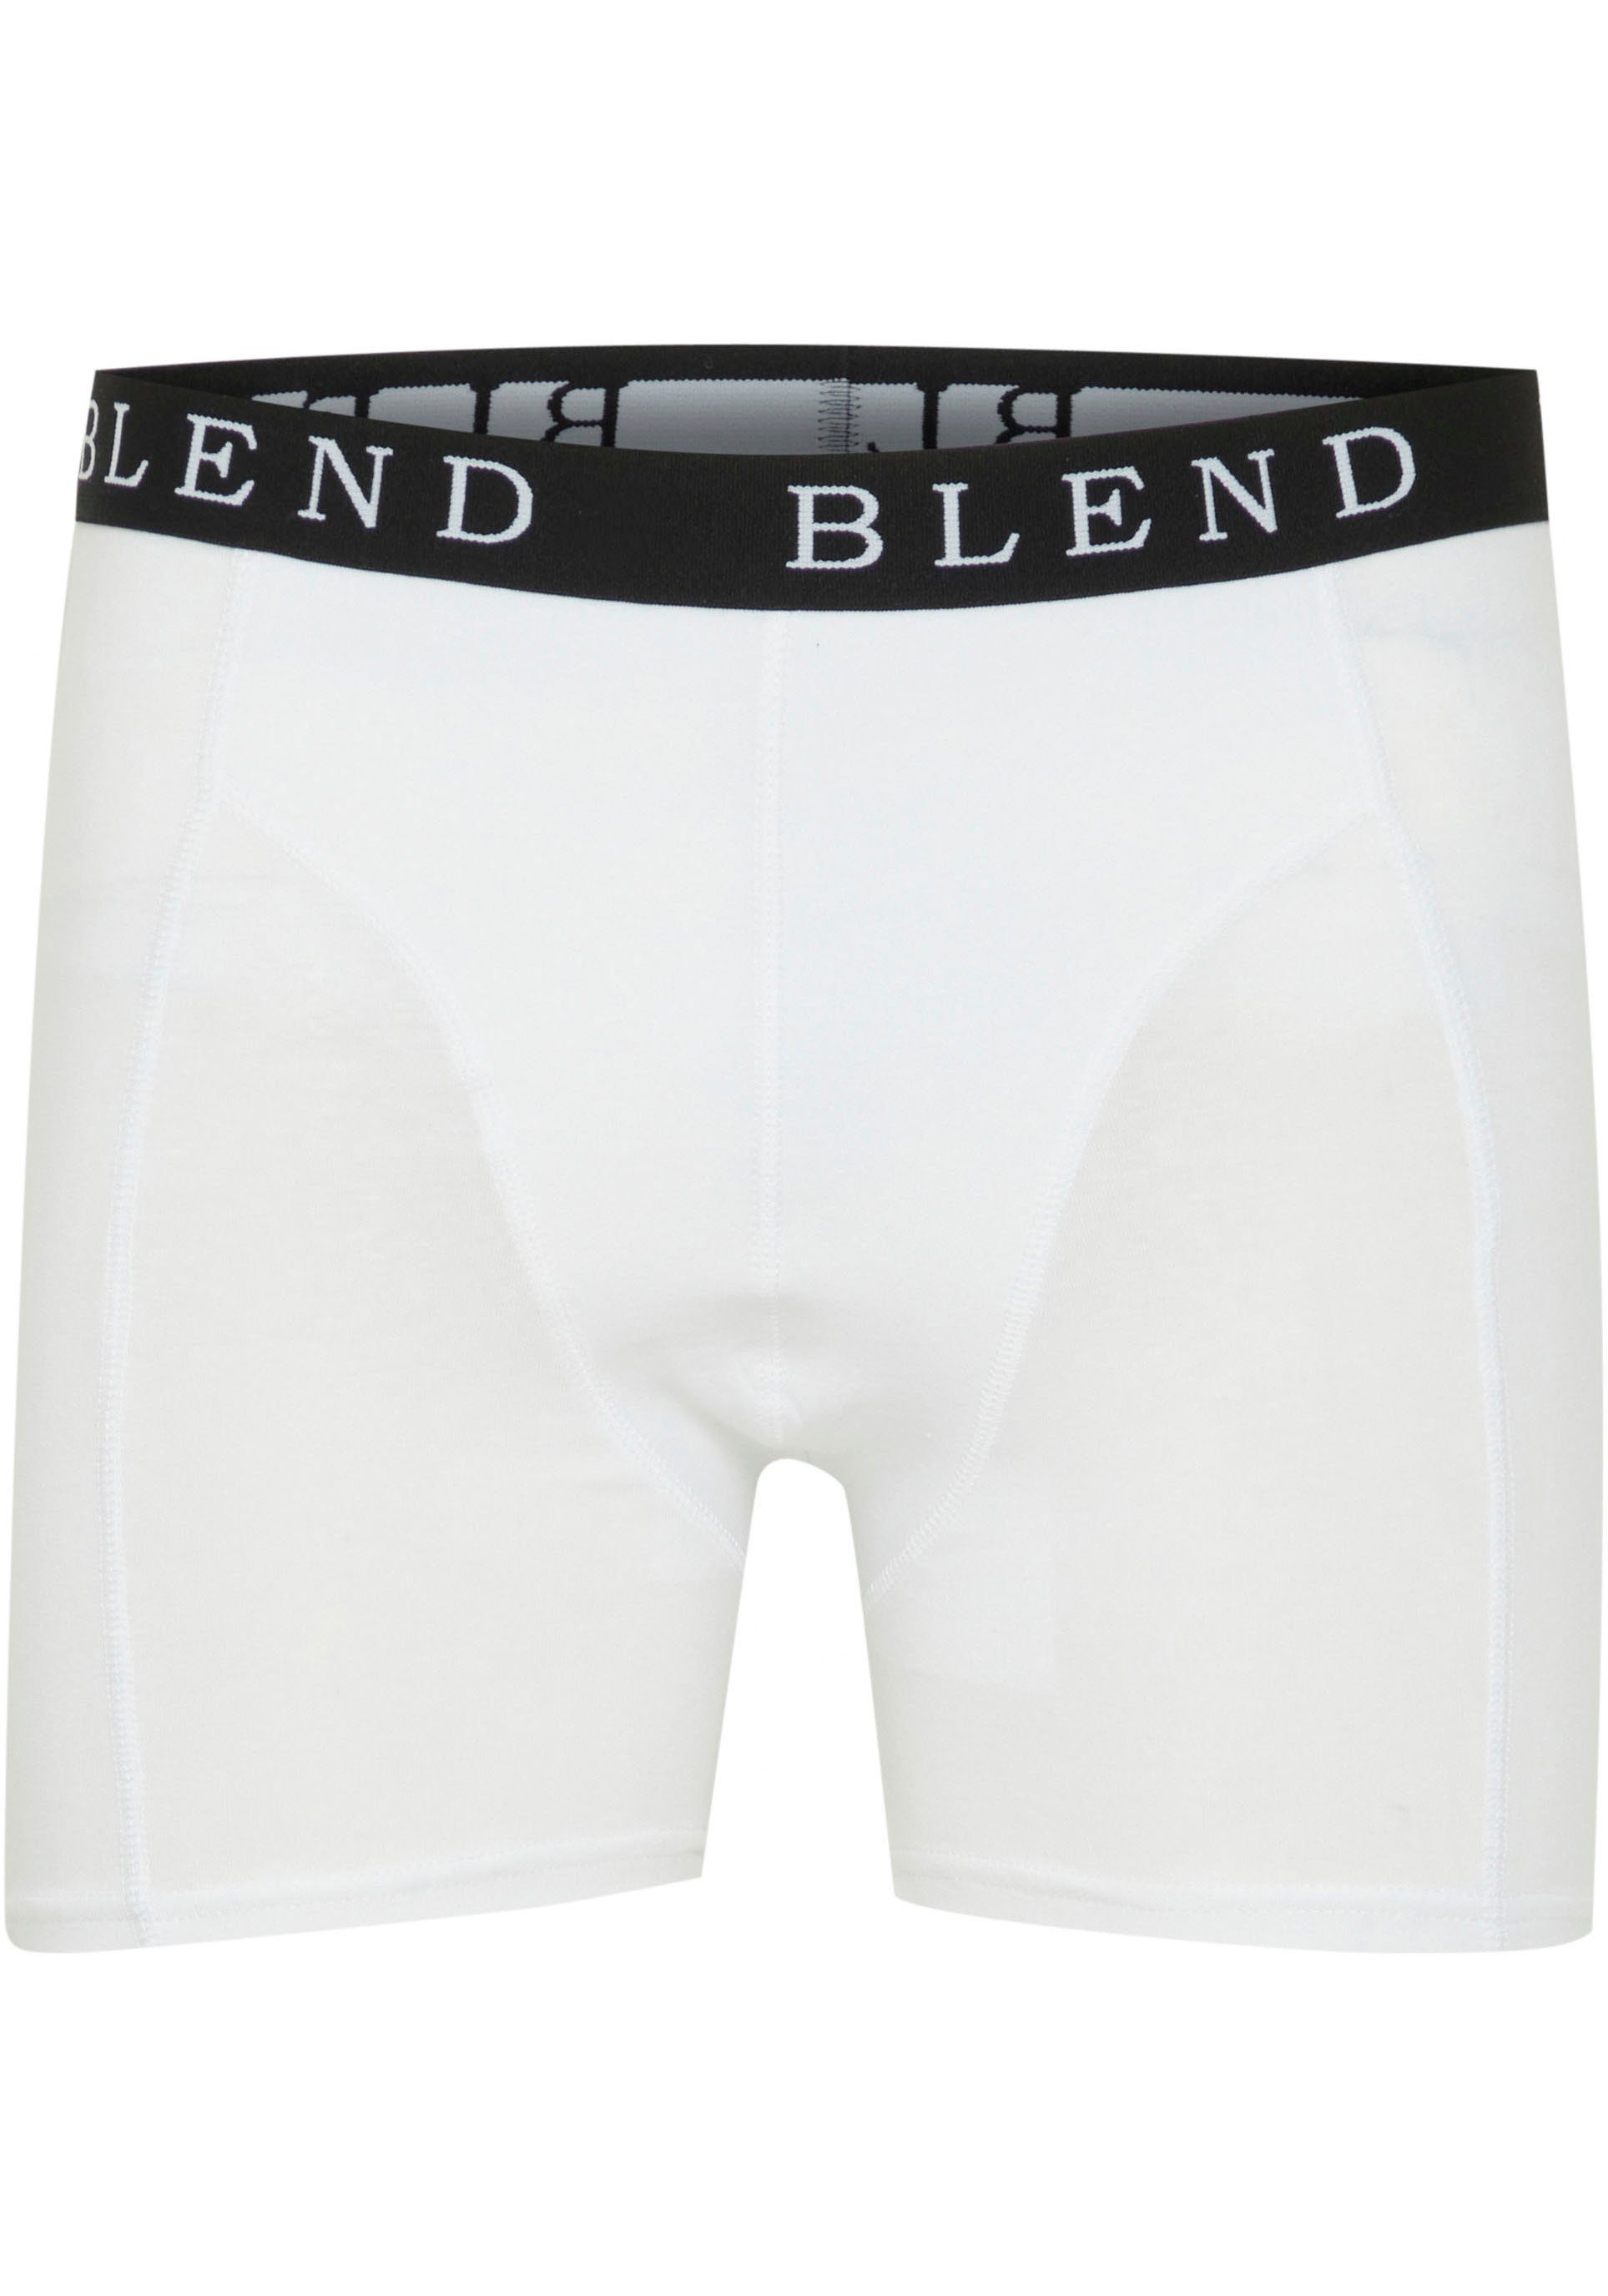 Blend Trunk Underwear 2 Pack (Set, 2-St)